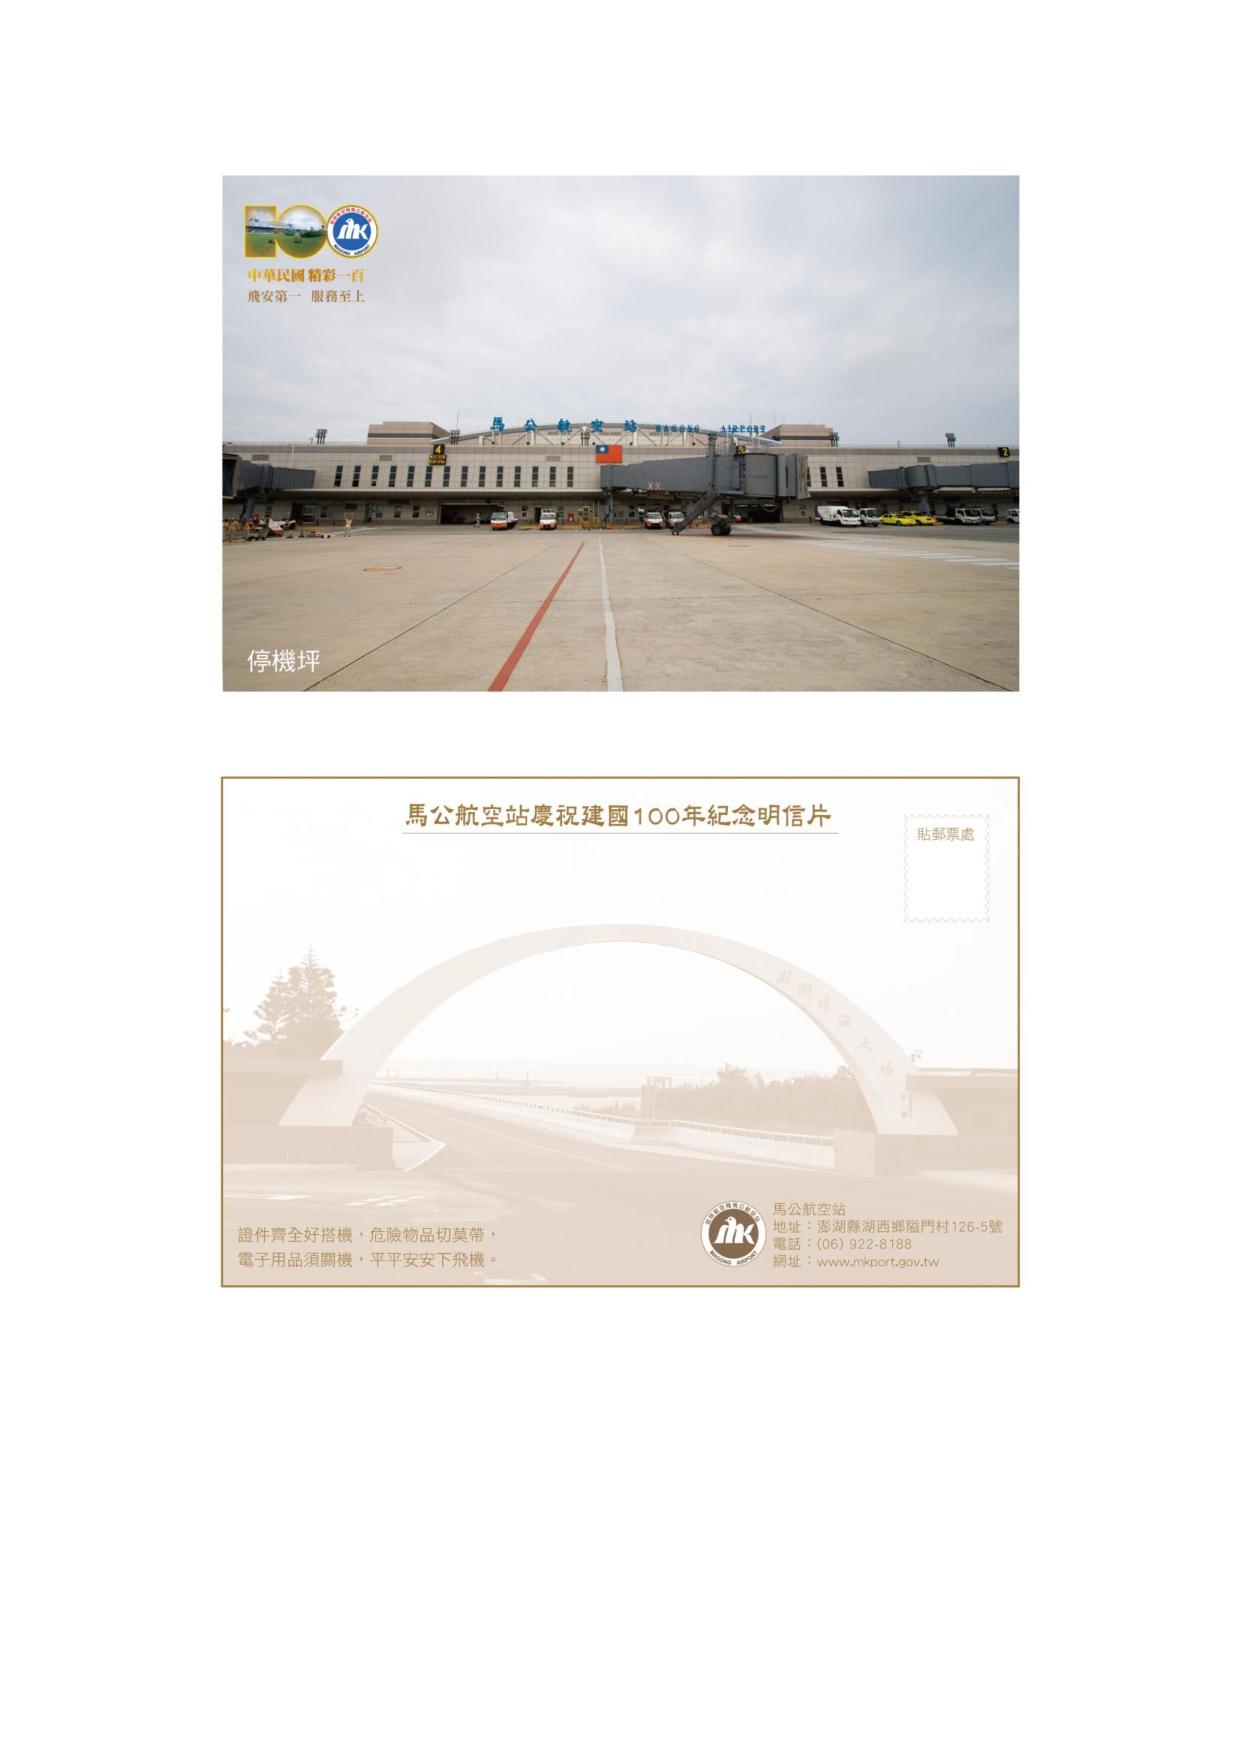 馬公站慶祝建國一百年紀念明信片2